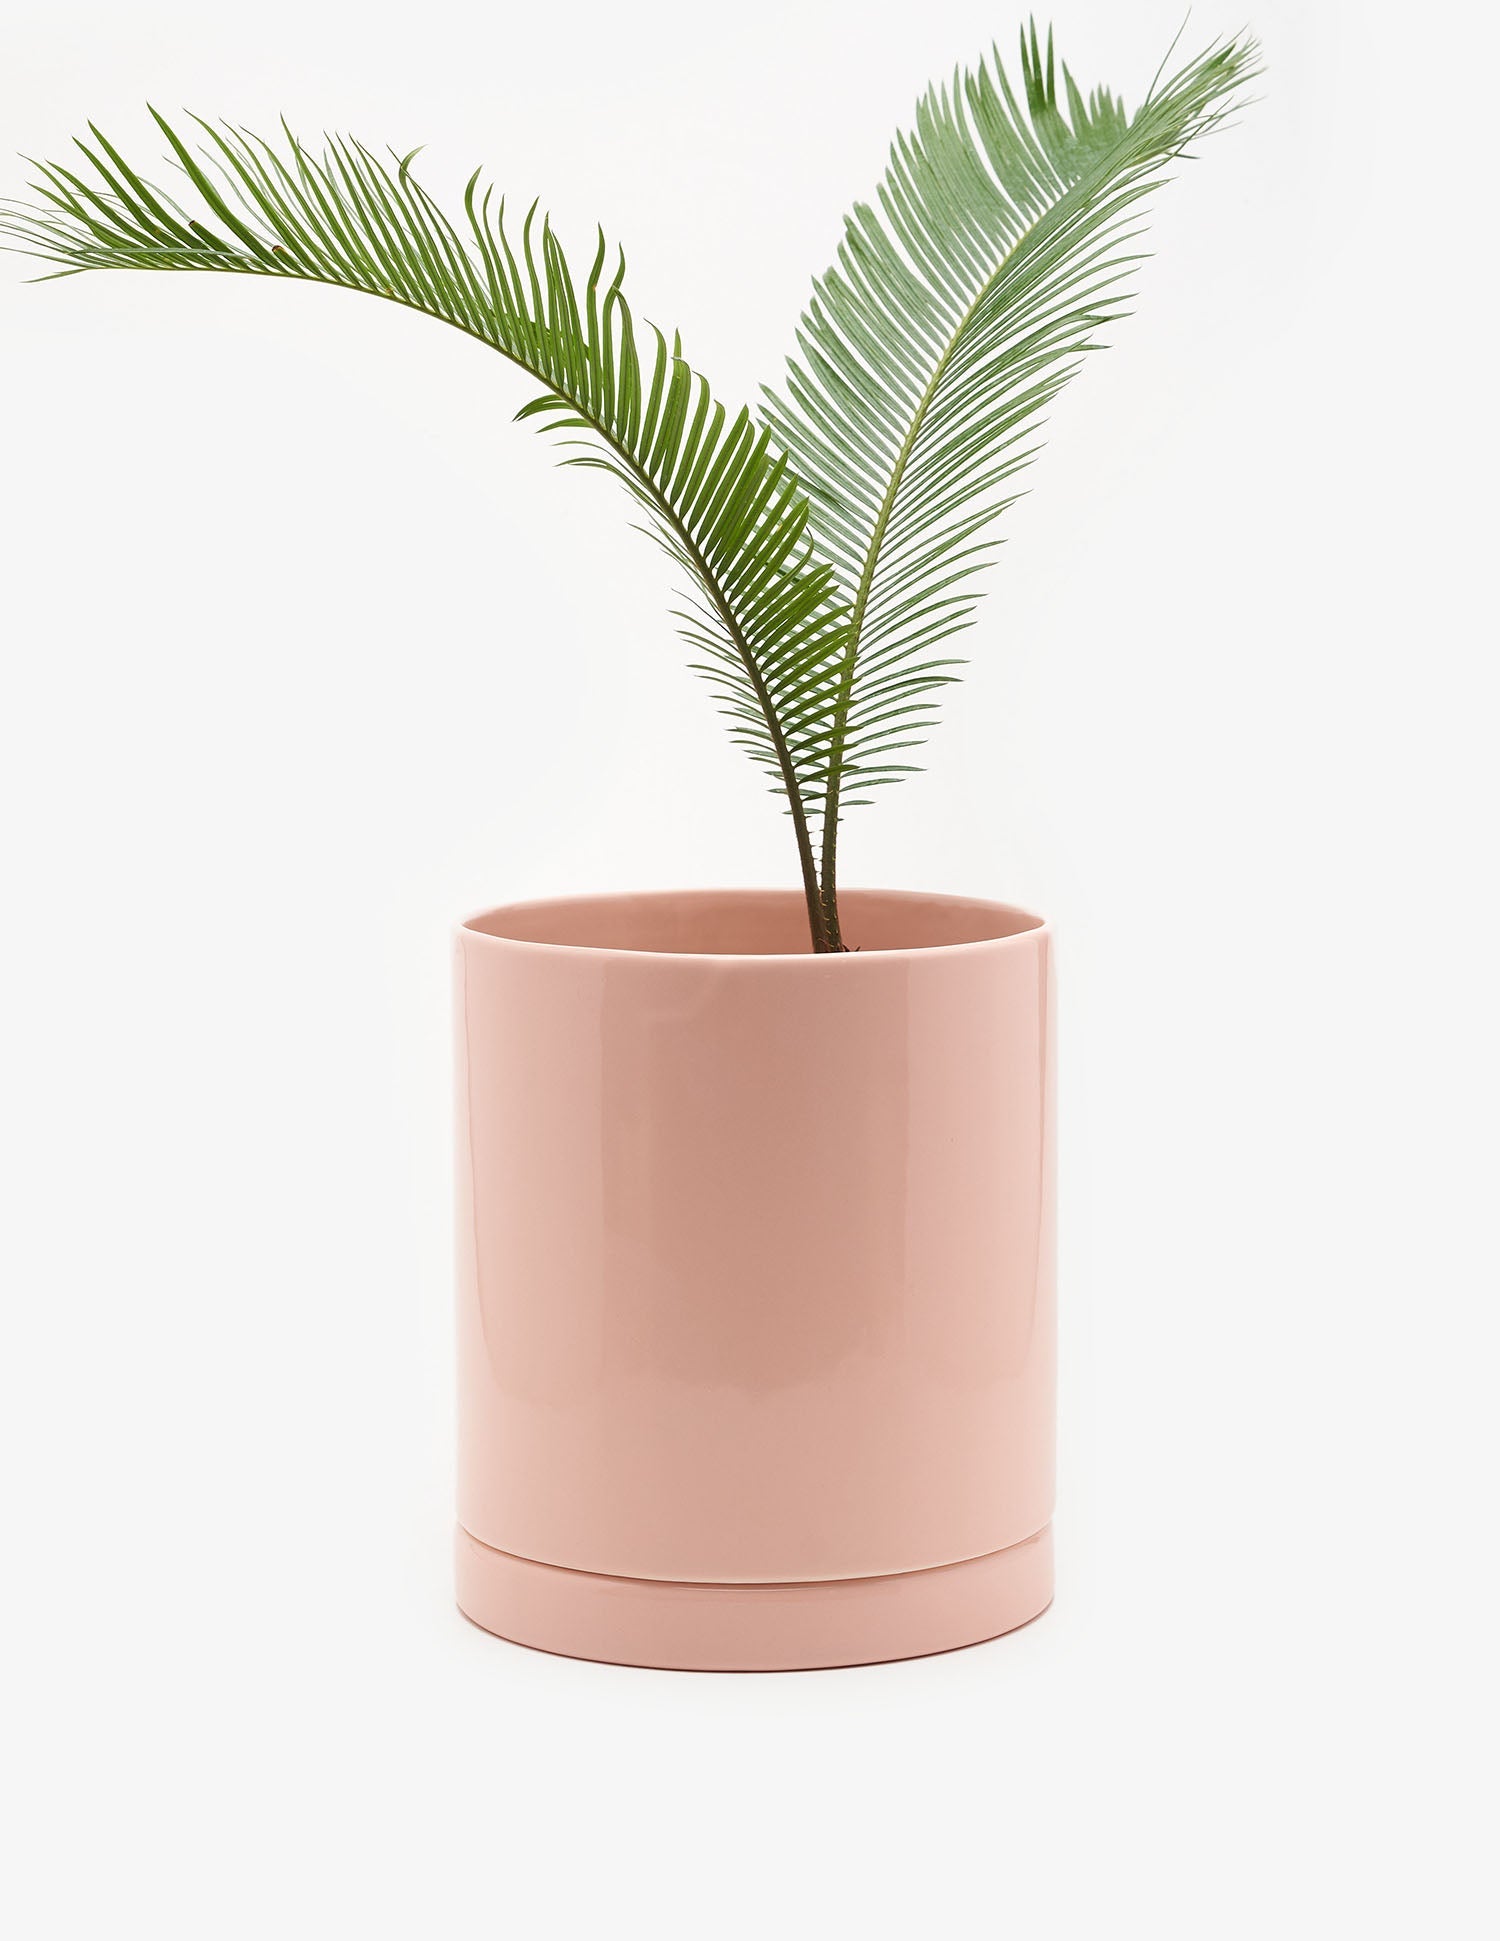 Planta Cyca en maceta de cerámica | Compra plantas online | Balcón